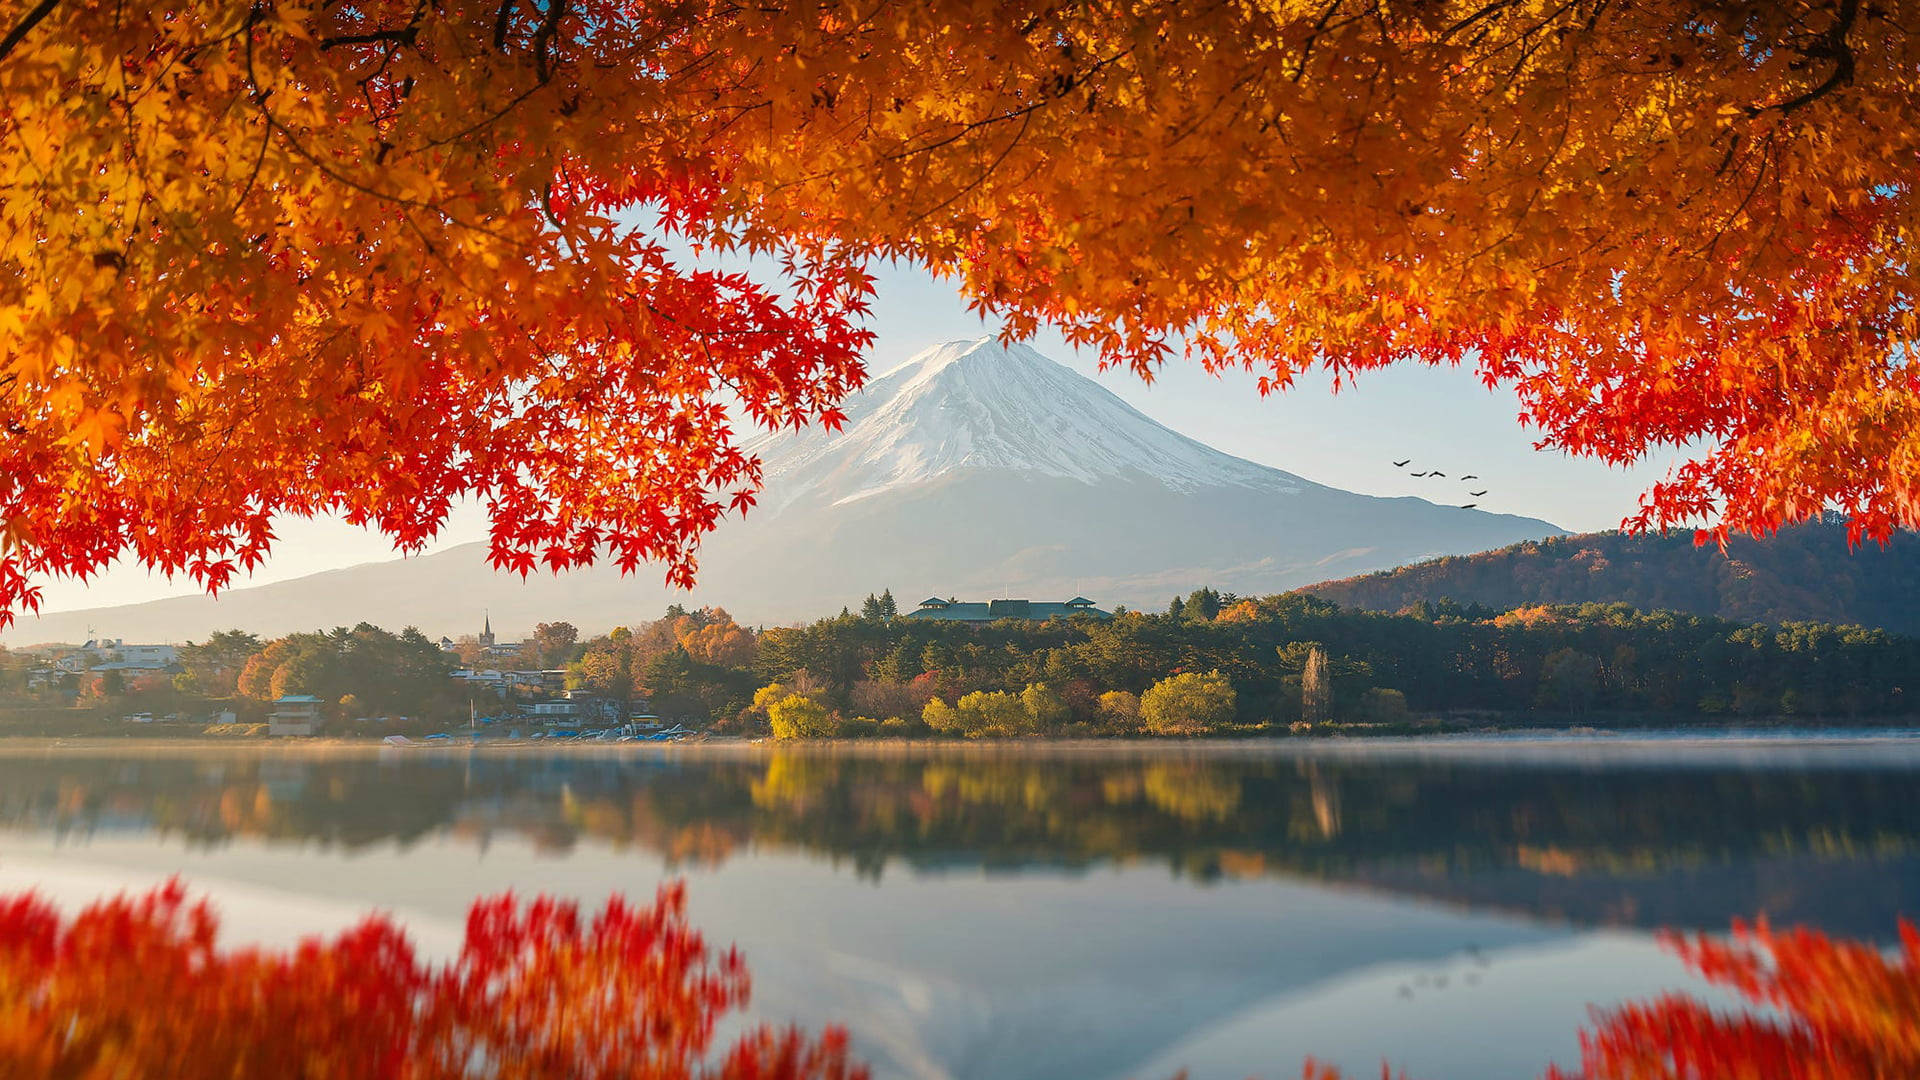 Autumn MacBook Mount Fuji Wallpaper